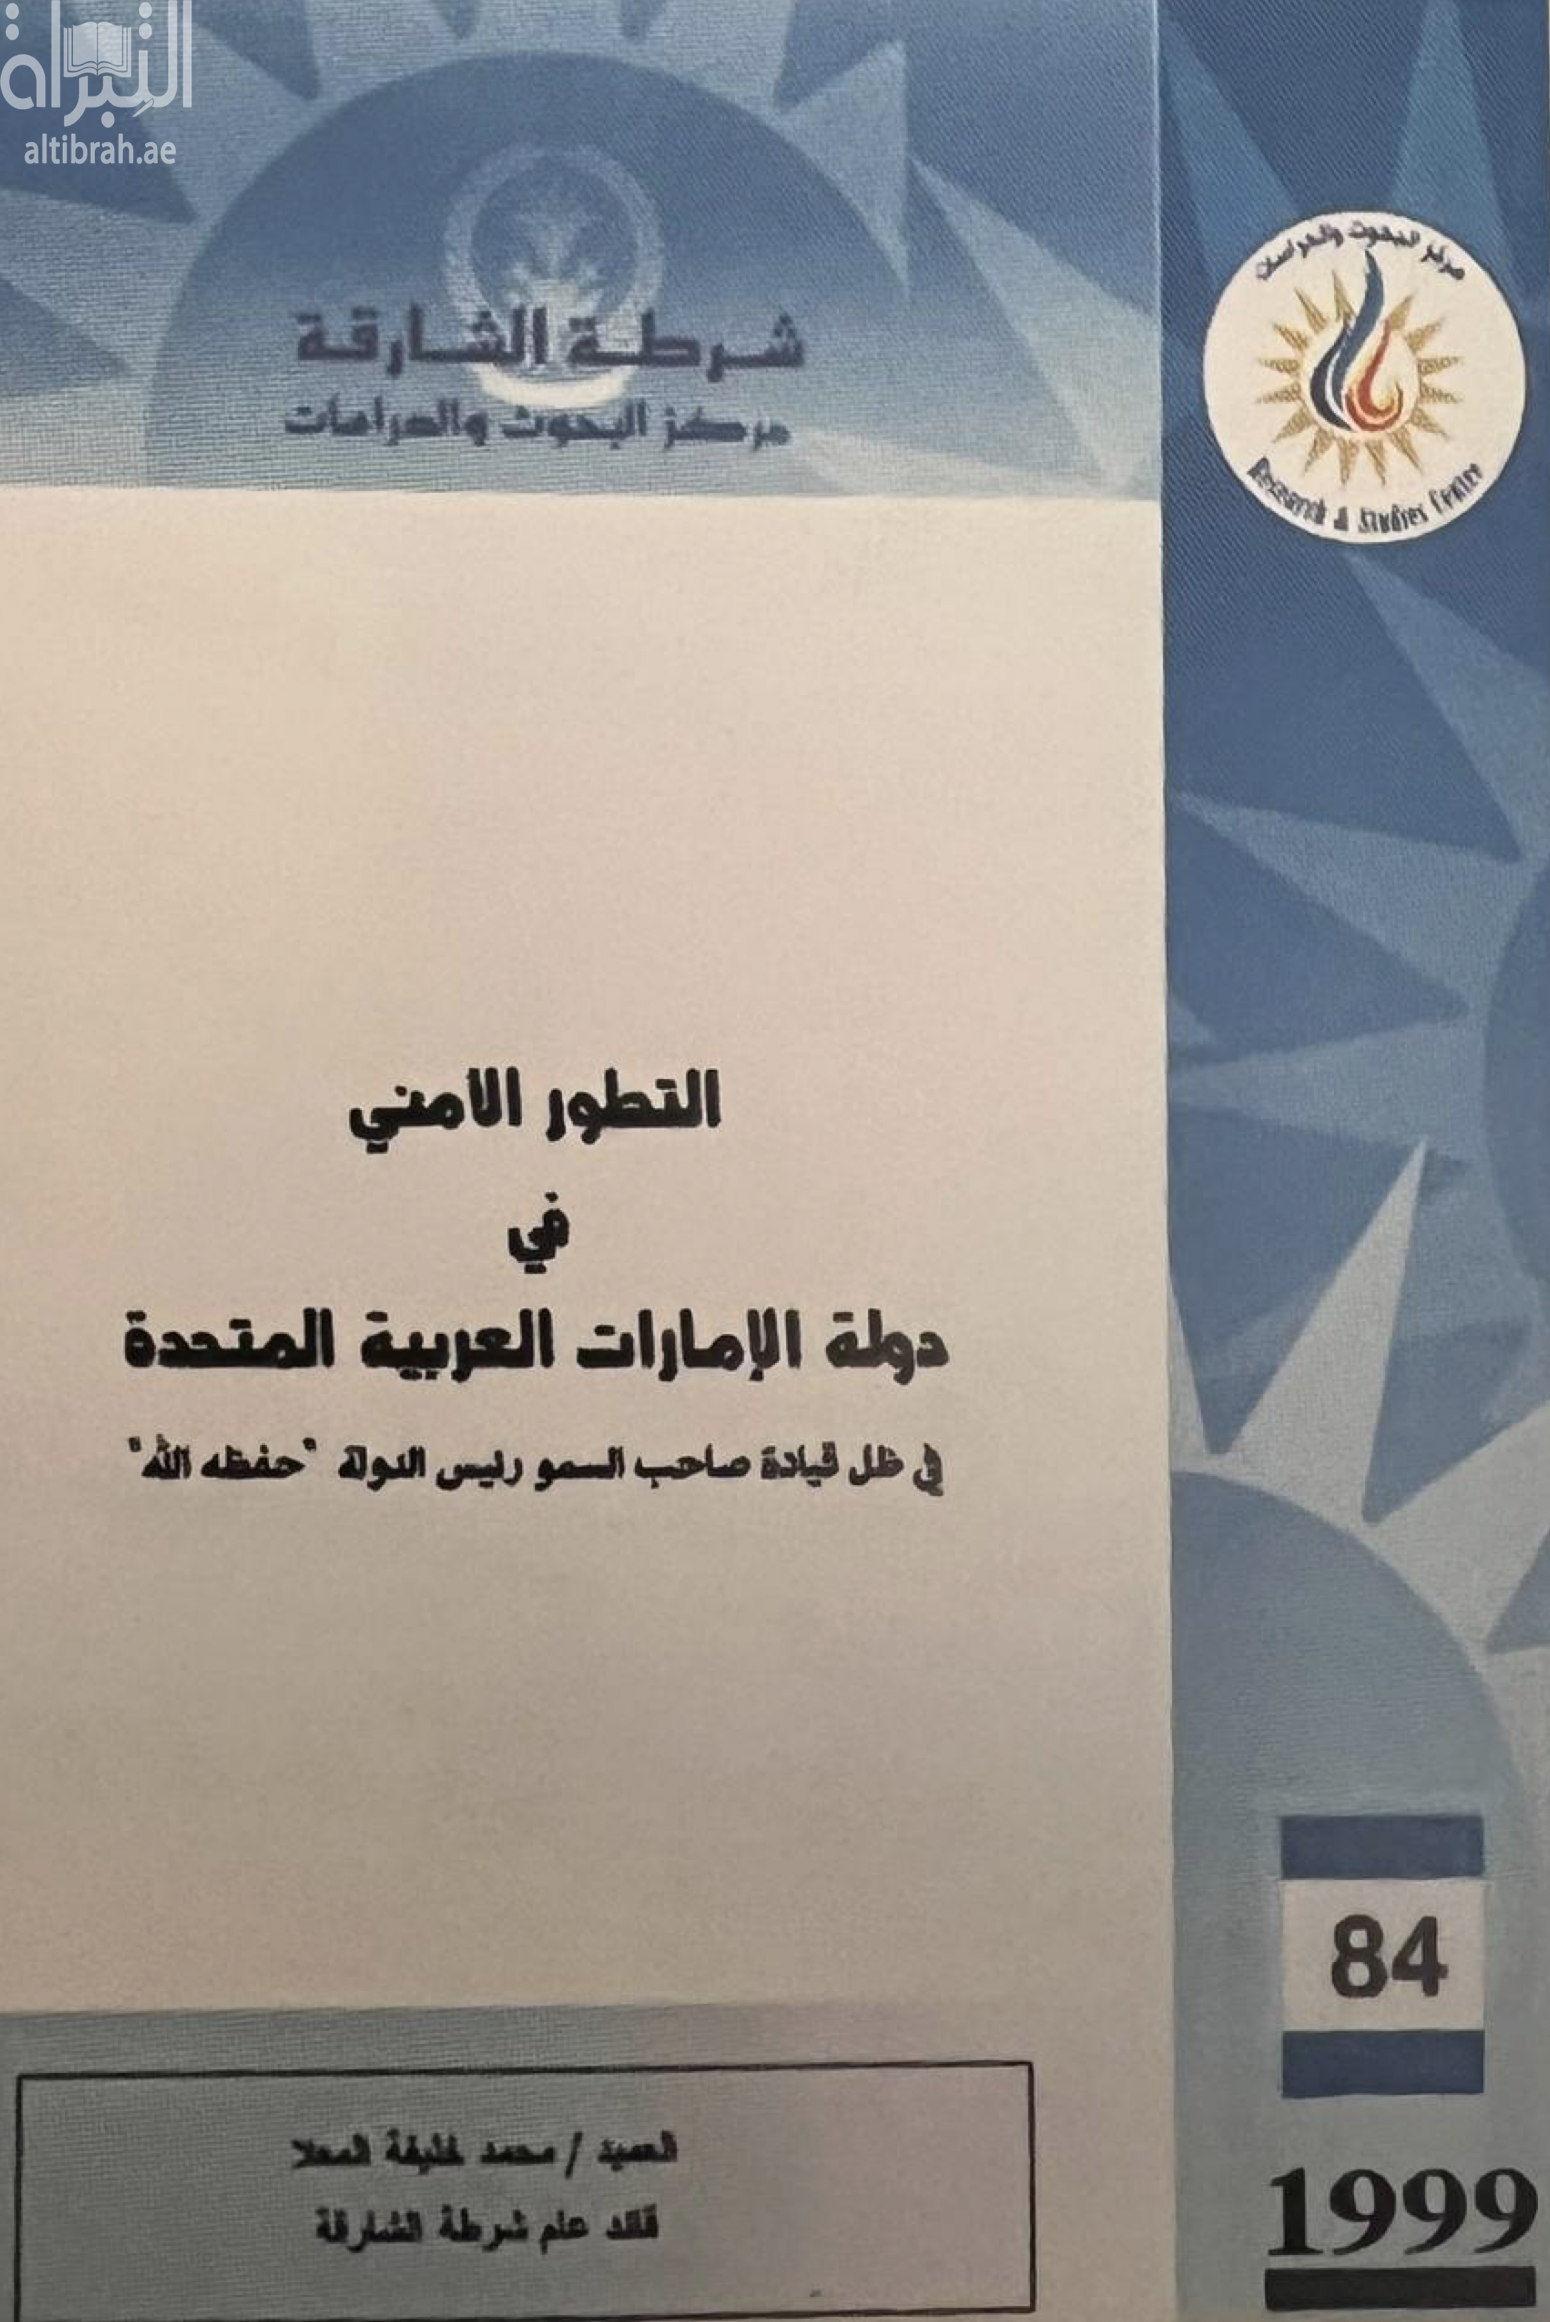 التطور الأمني لدولة الإمارات العربية المتحدة في ظل قيادة صاحب السمو رئيس الدولة